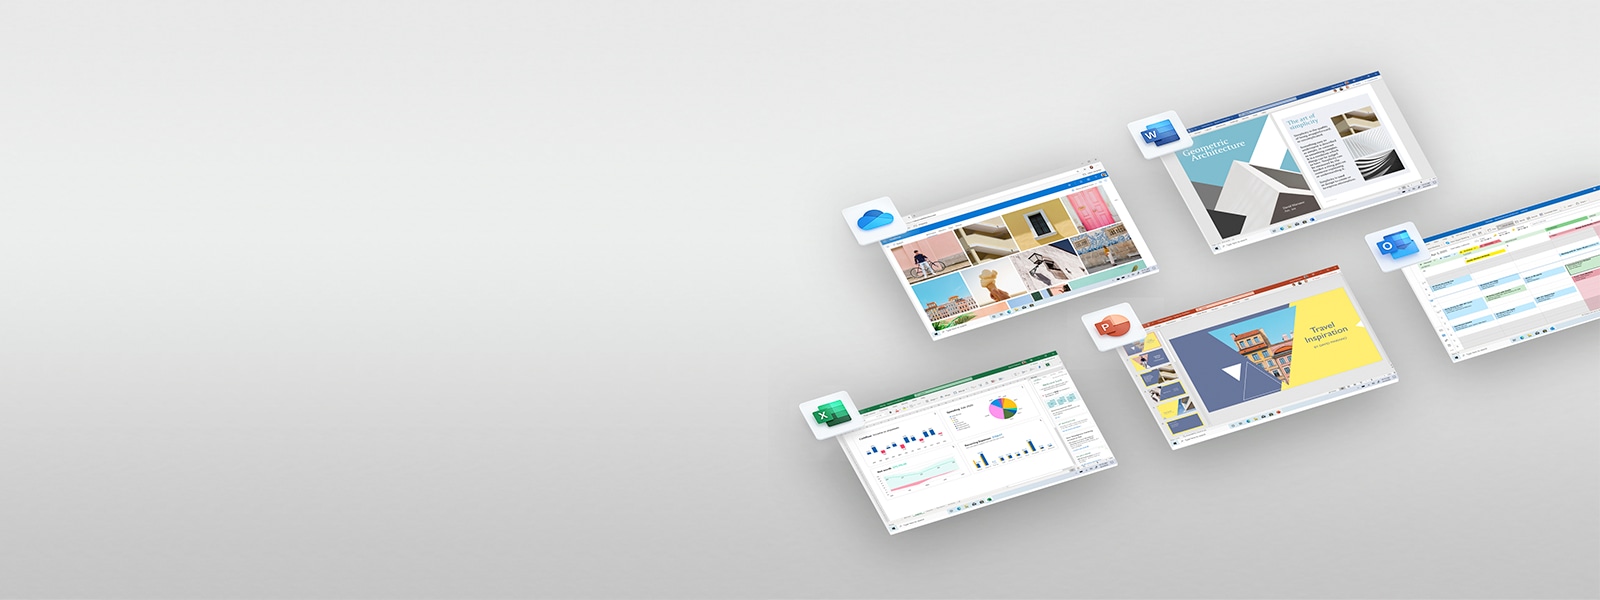 OneDrive と Office アプリケーションのイメージ